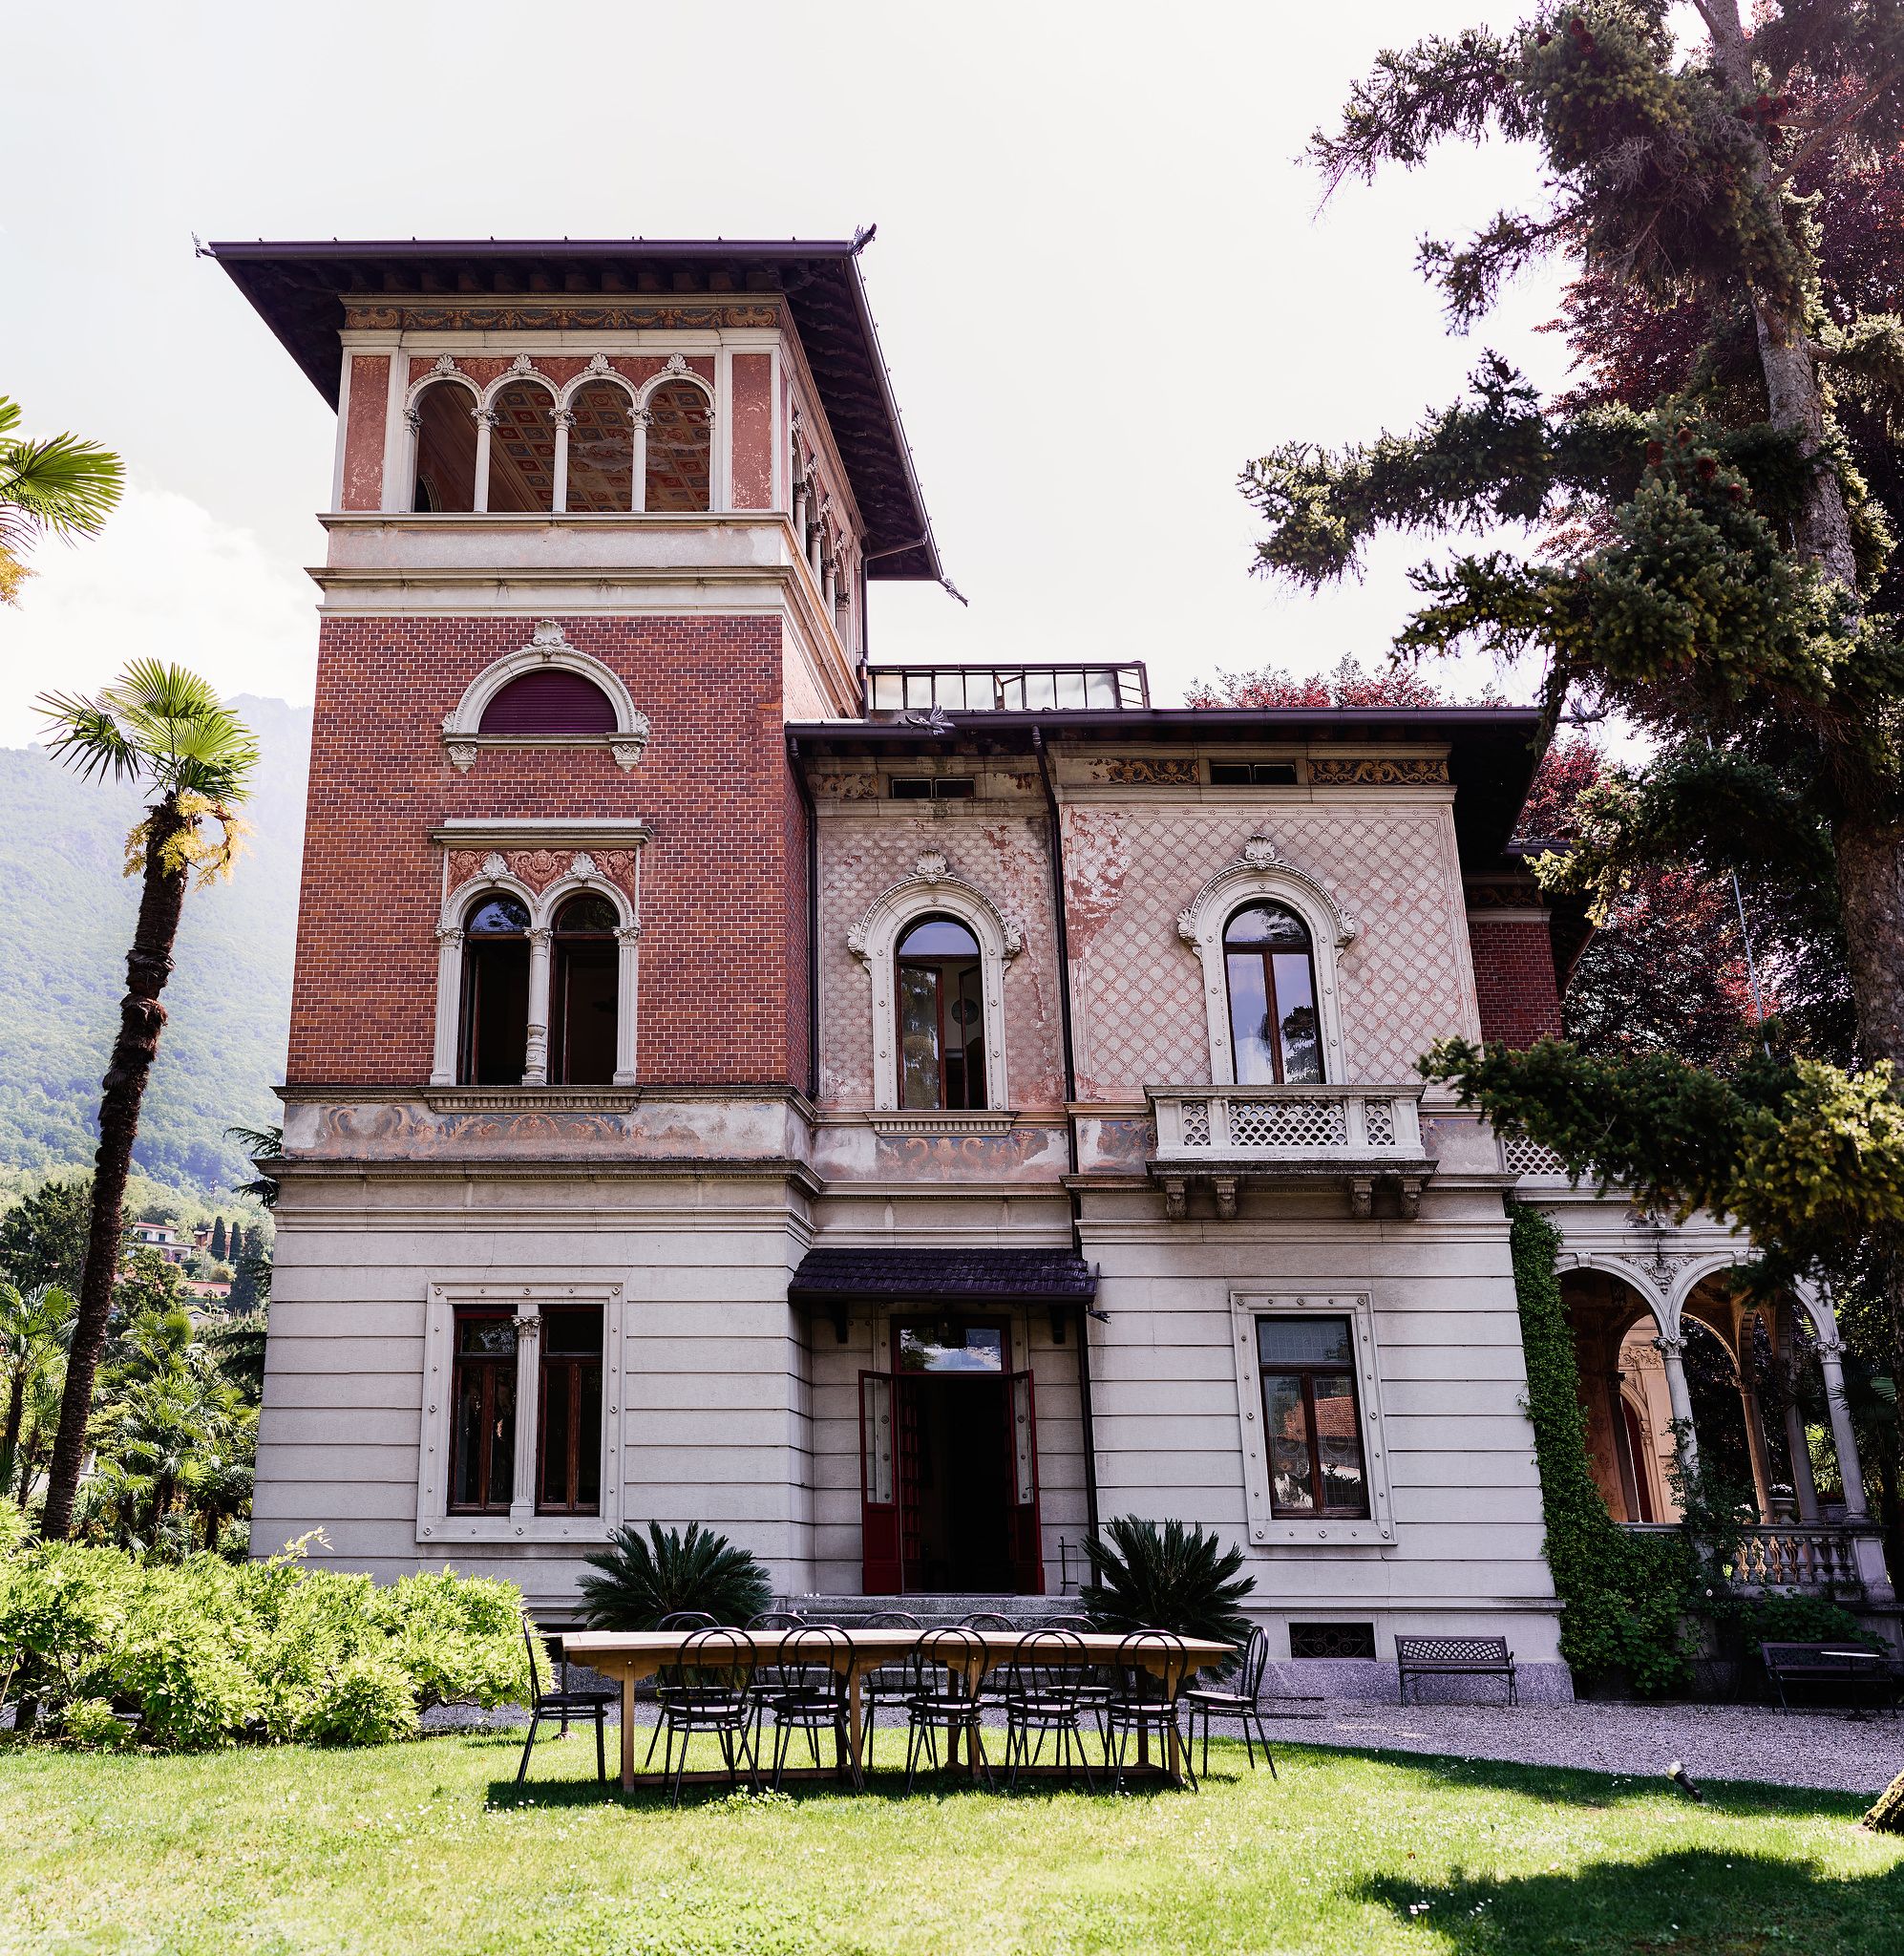 Facade of Villa Confalonieri 1913 in Lake Como, Italy. Wedding in Italy image by Jenny Fu Studio